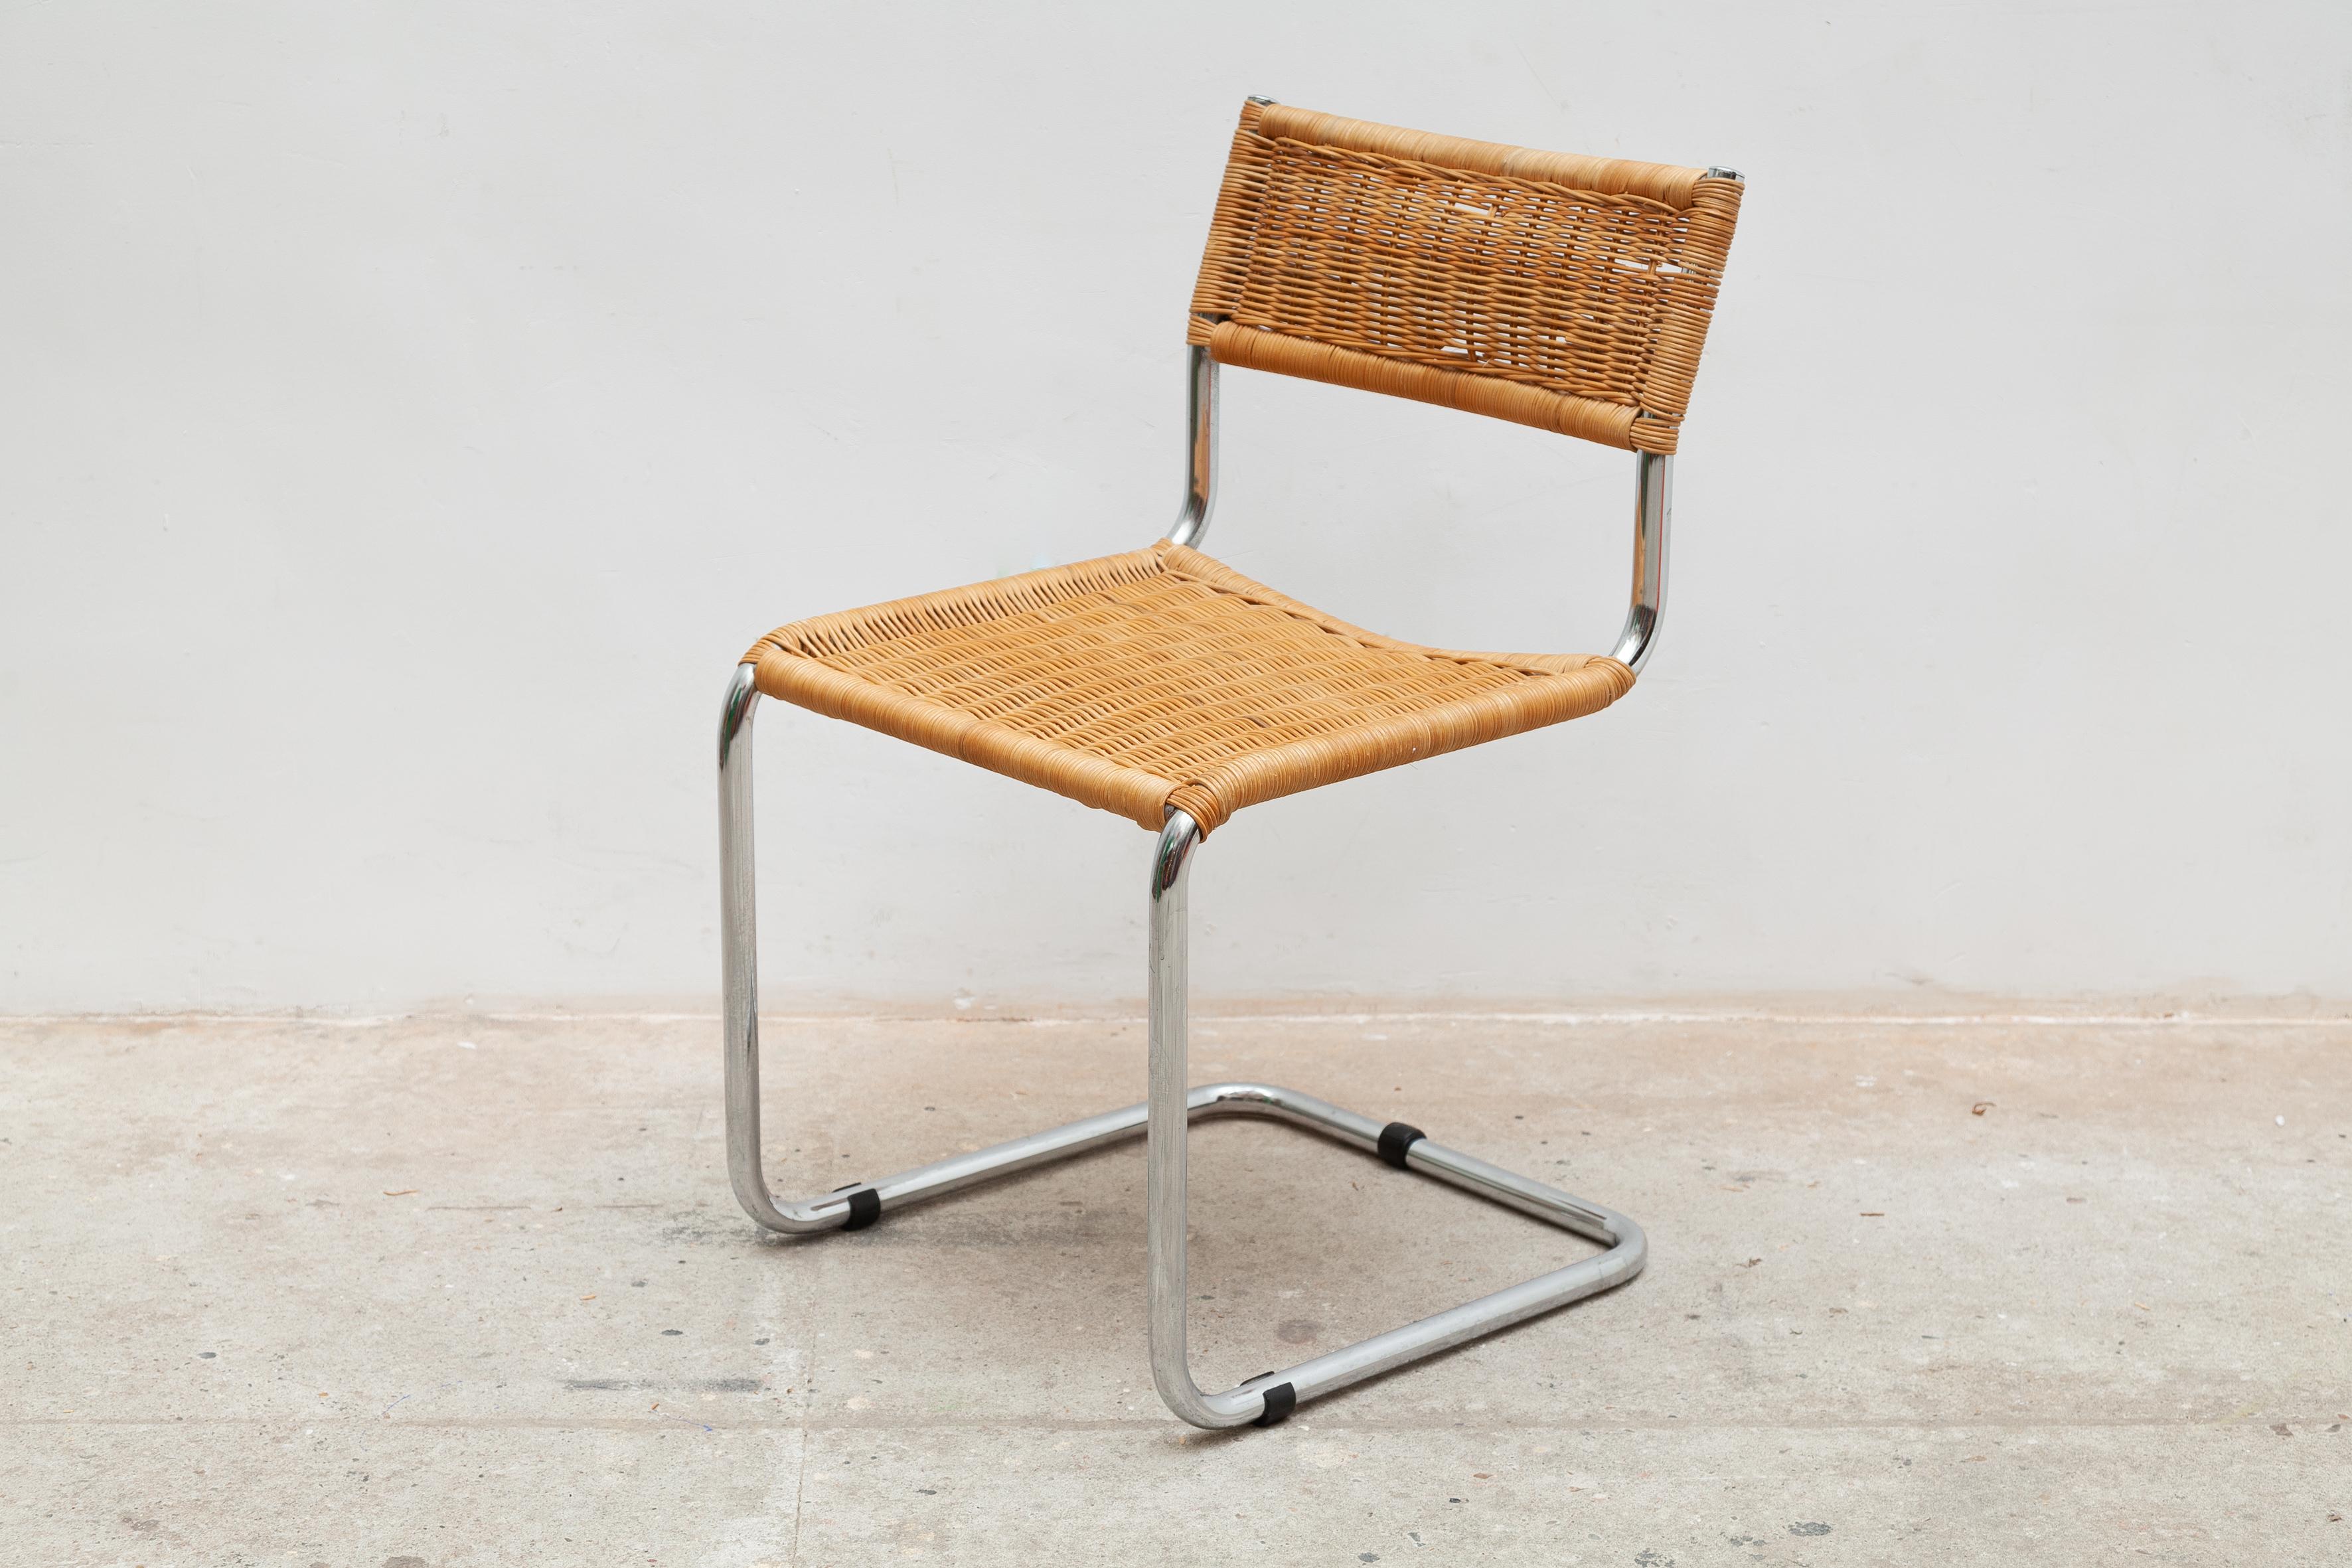 Cette paire de chaises a été fabriquée dans les années 60. Il est composé d'une structure tubulaire chromée avec base cantilever, l'assise et le dossier sont en rotin tressé.
Un joli classique qui rappelle le modèle Cesca B32 du designer hongrois